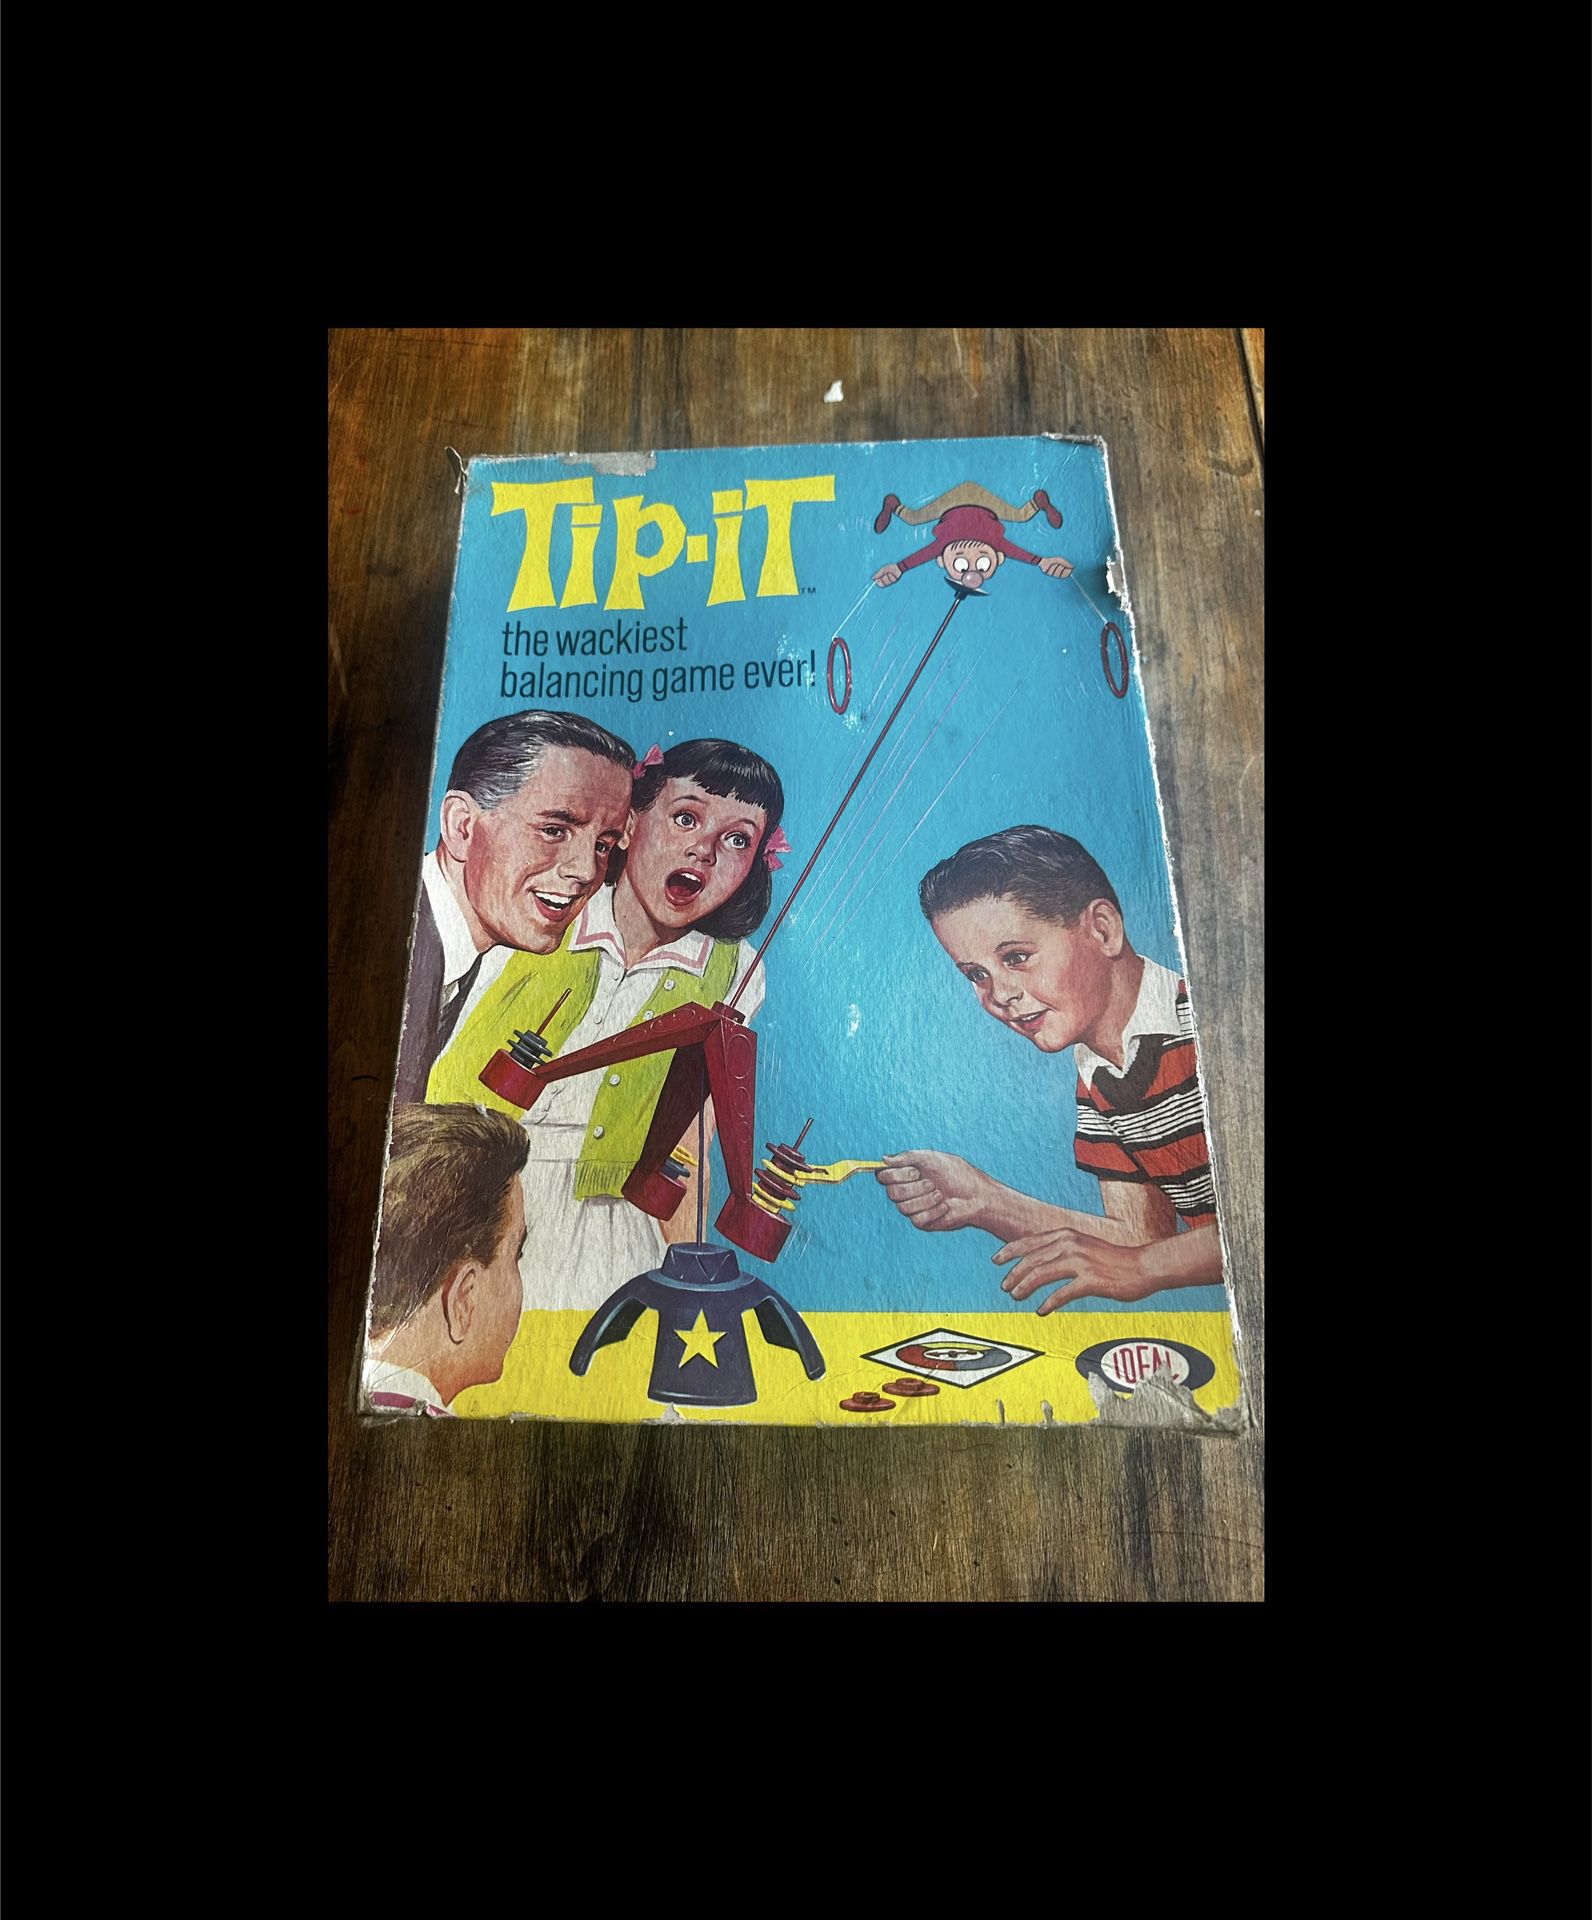 Vintage 1965 Ideal Tip It Tip-it Board Game 100% Complete